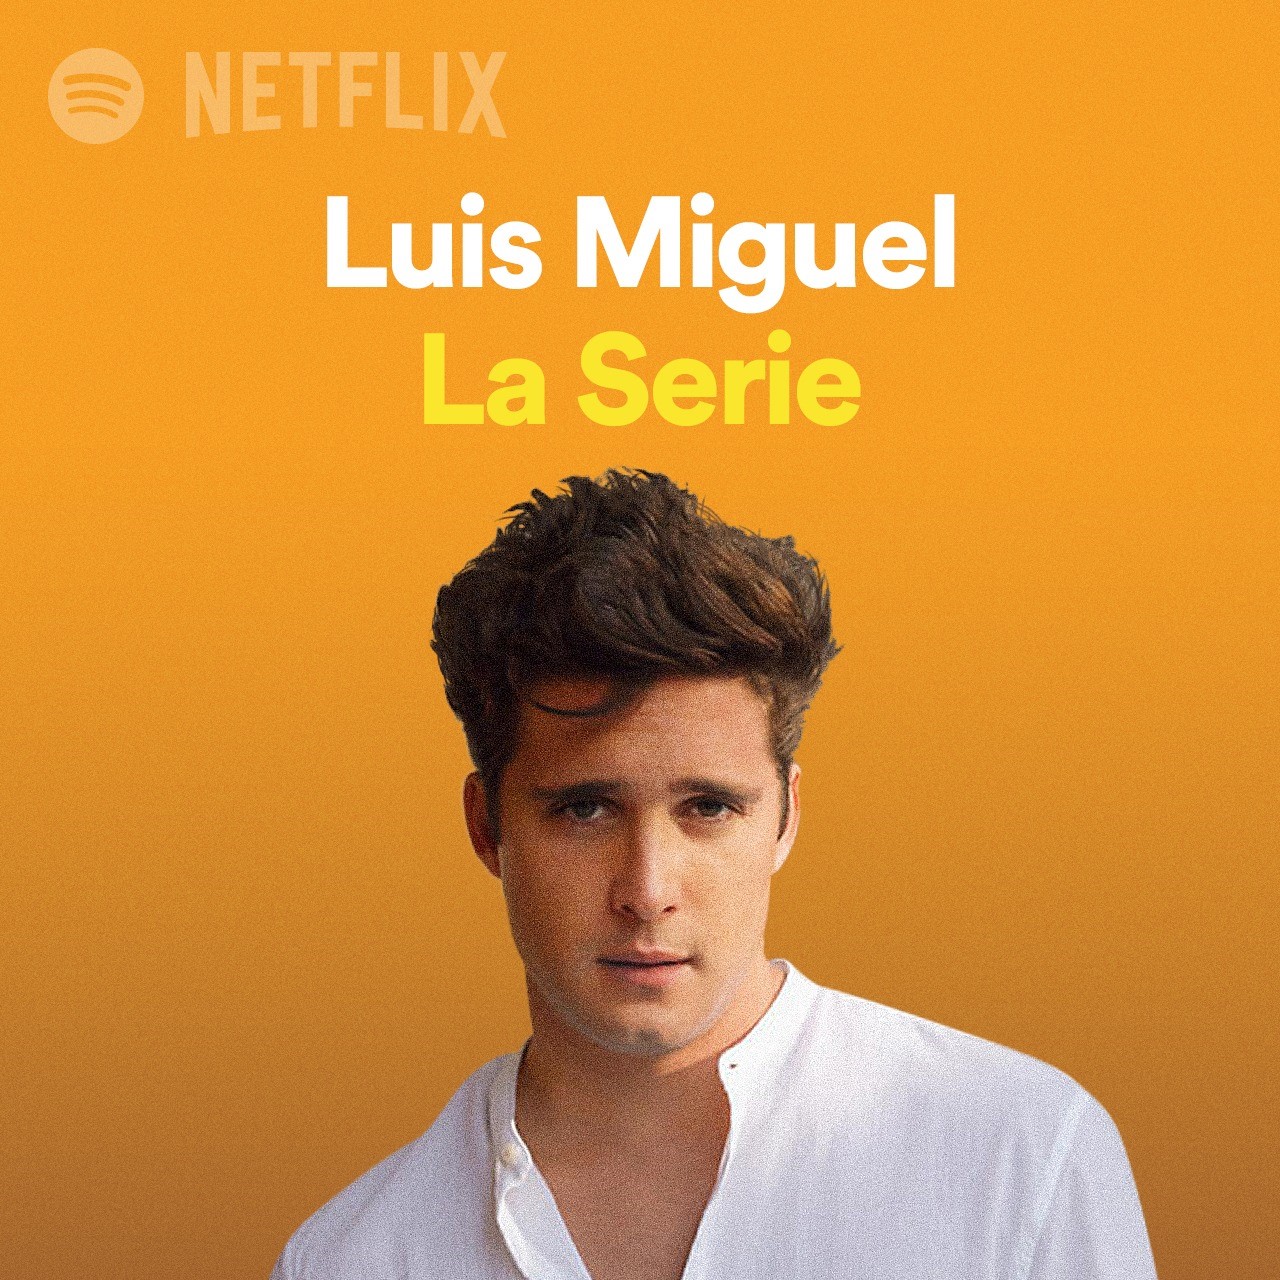 Spotify actualizó la playlist de Luis Miguel: La Serie con el primer track de la segunda temporada, en el cual podrás escuchar a diego Boneta